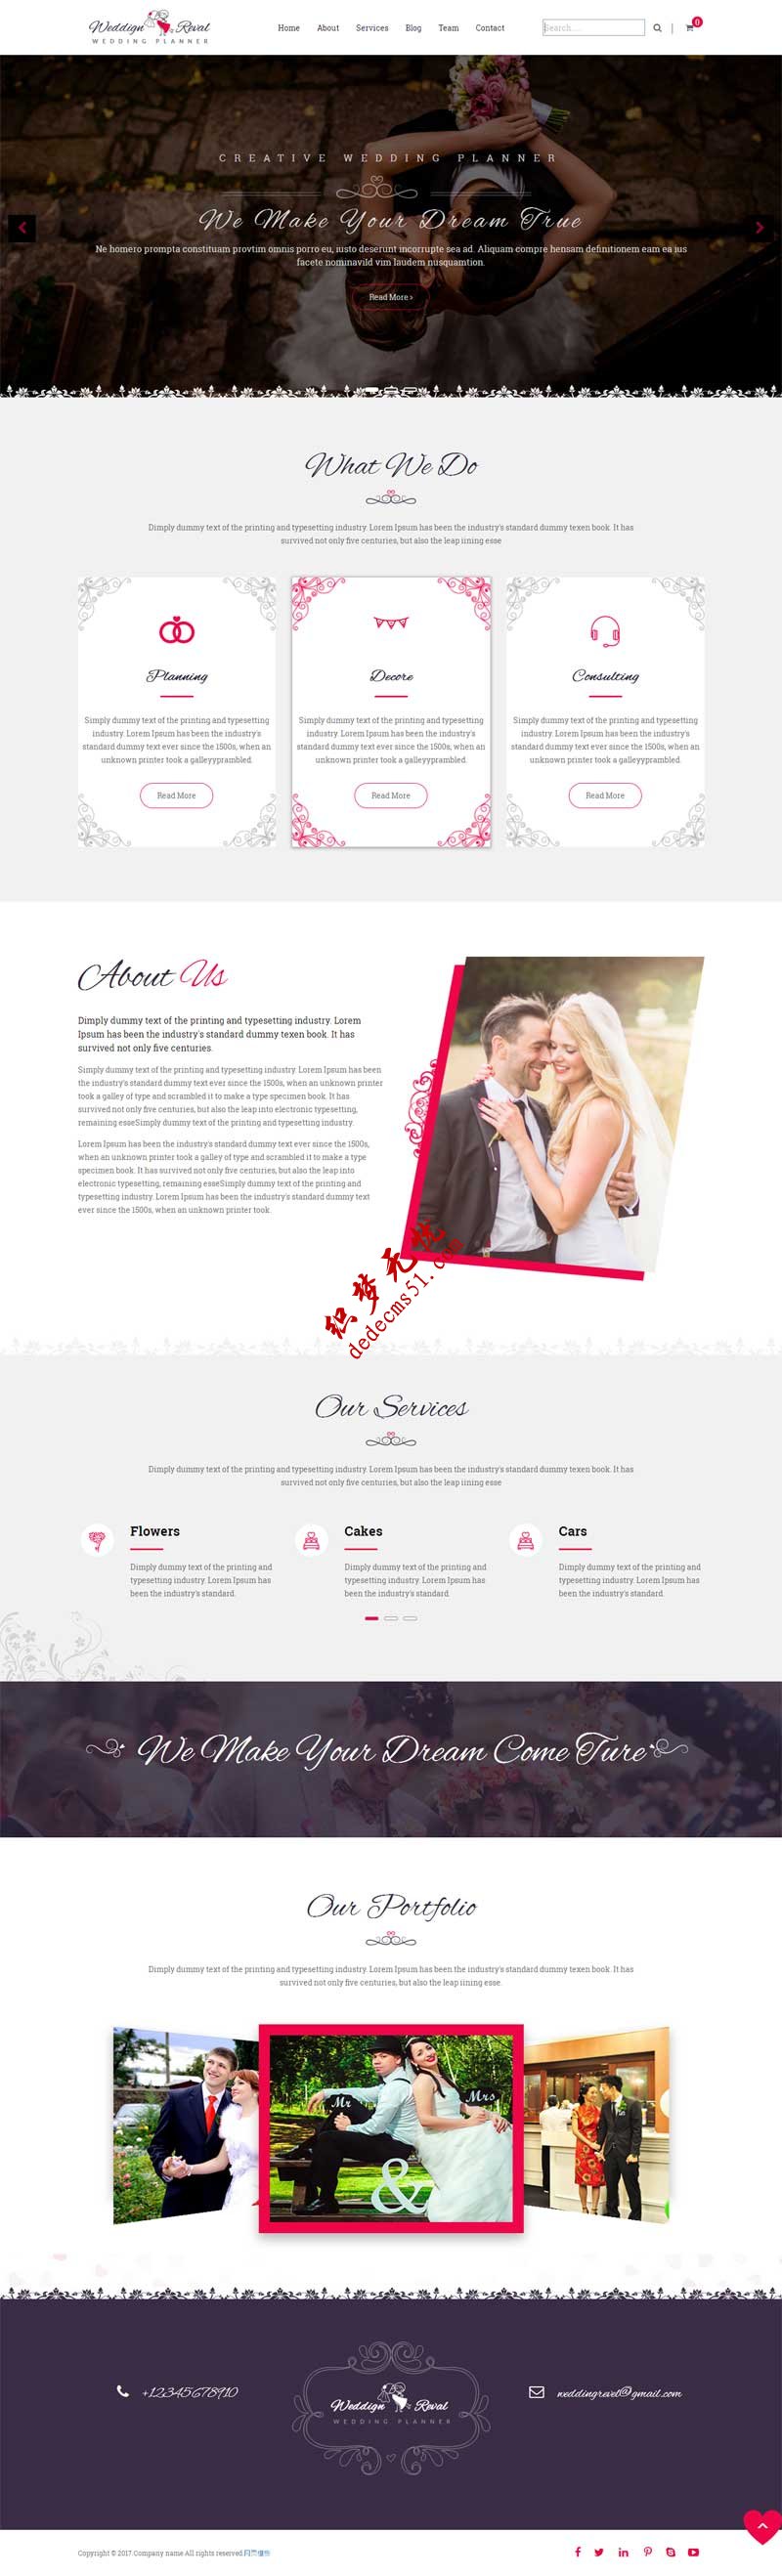 html5响应式简洁欧美风格的婚庆摄影公司网站模板下载